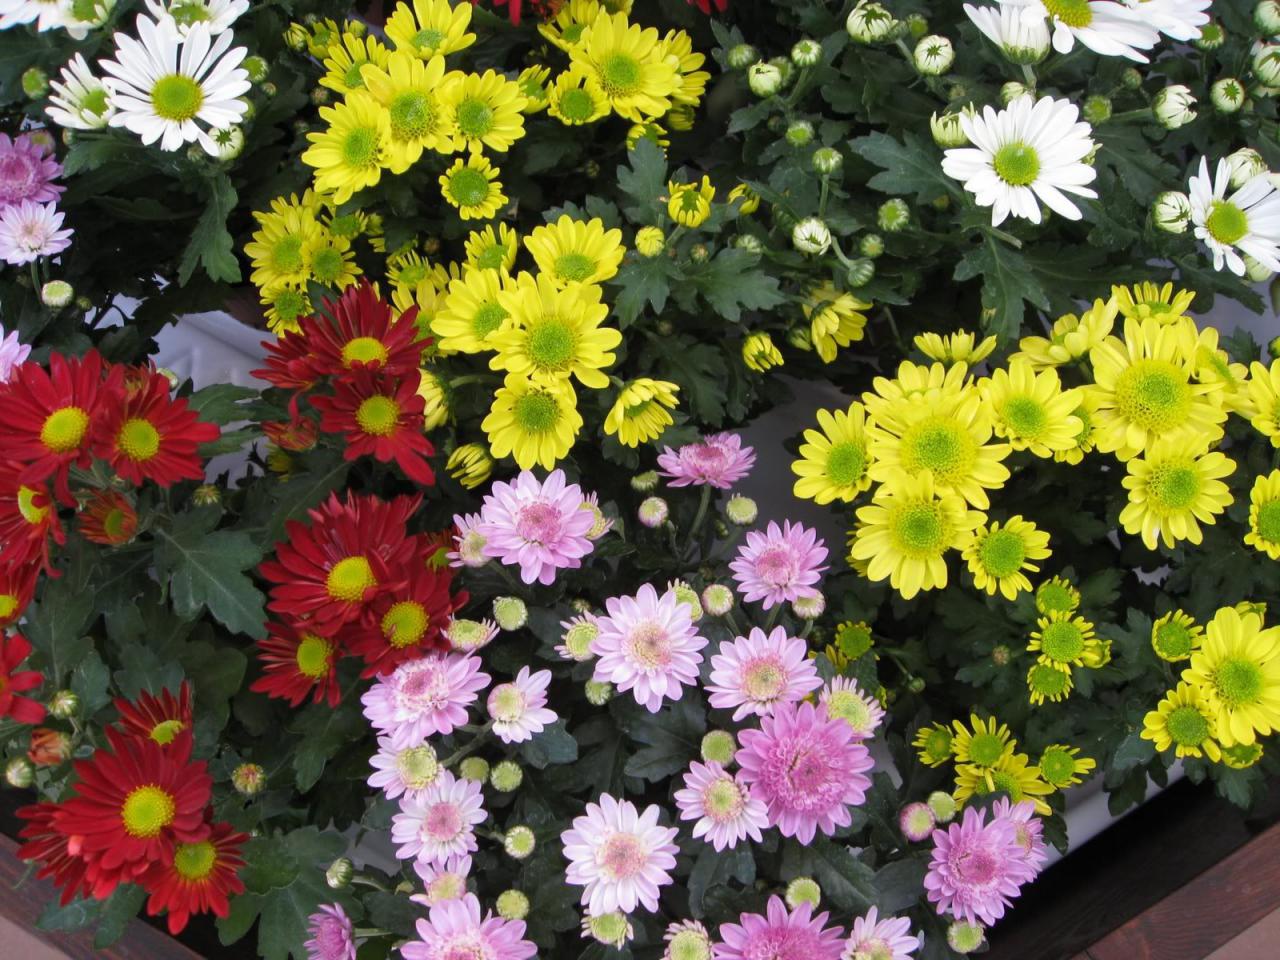 Rất nhiều loại hoa cúc với màu sắc và hình dáng khác nhau được lựa chọn để trang trí